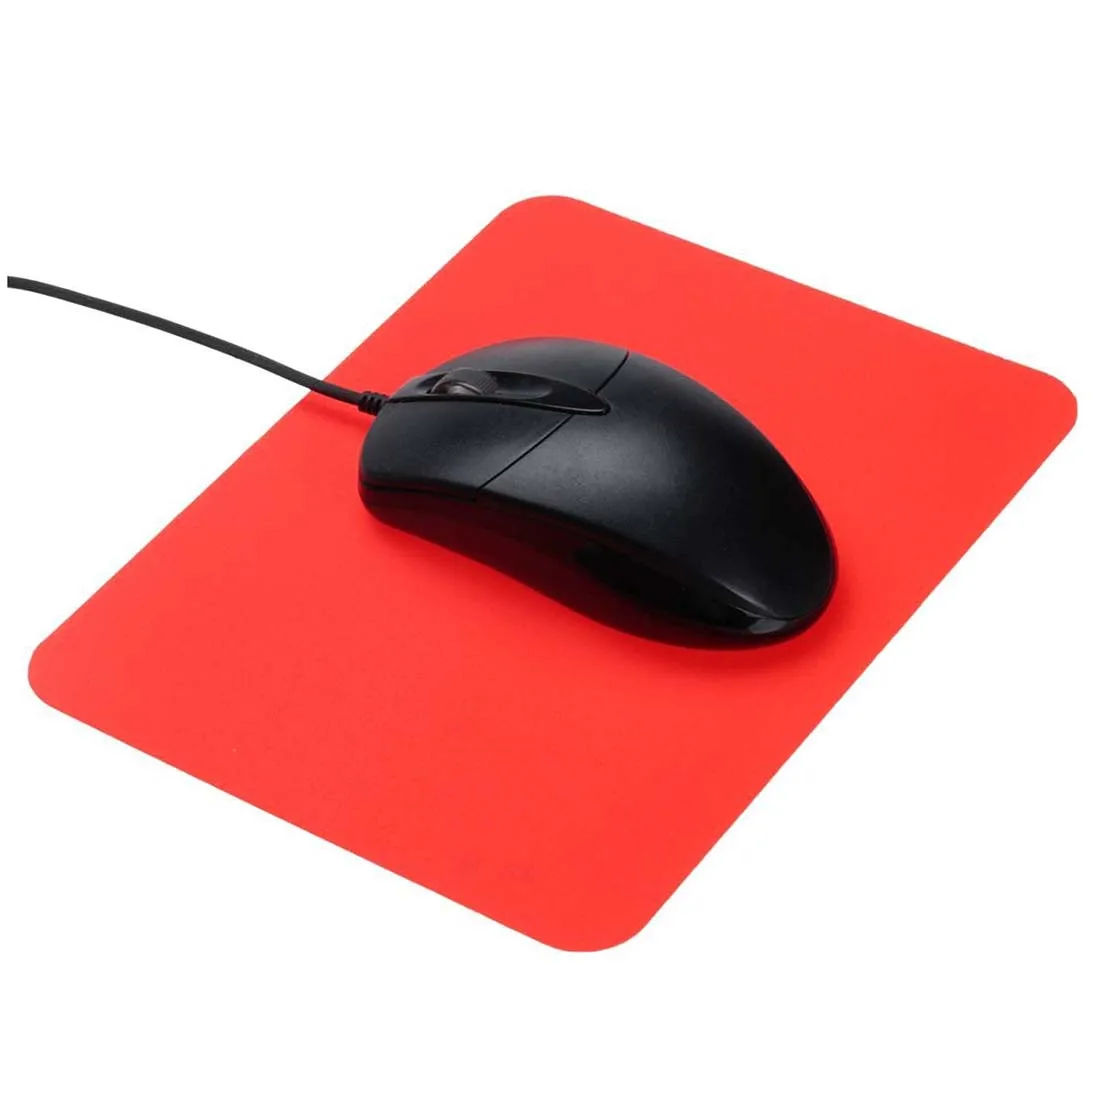 Игровой коврик для мыши LEICHT тонкие Нескользящие силиконовый гель игровой коврик для мыши Коврик для мыши для PC ноутбук